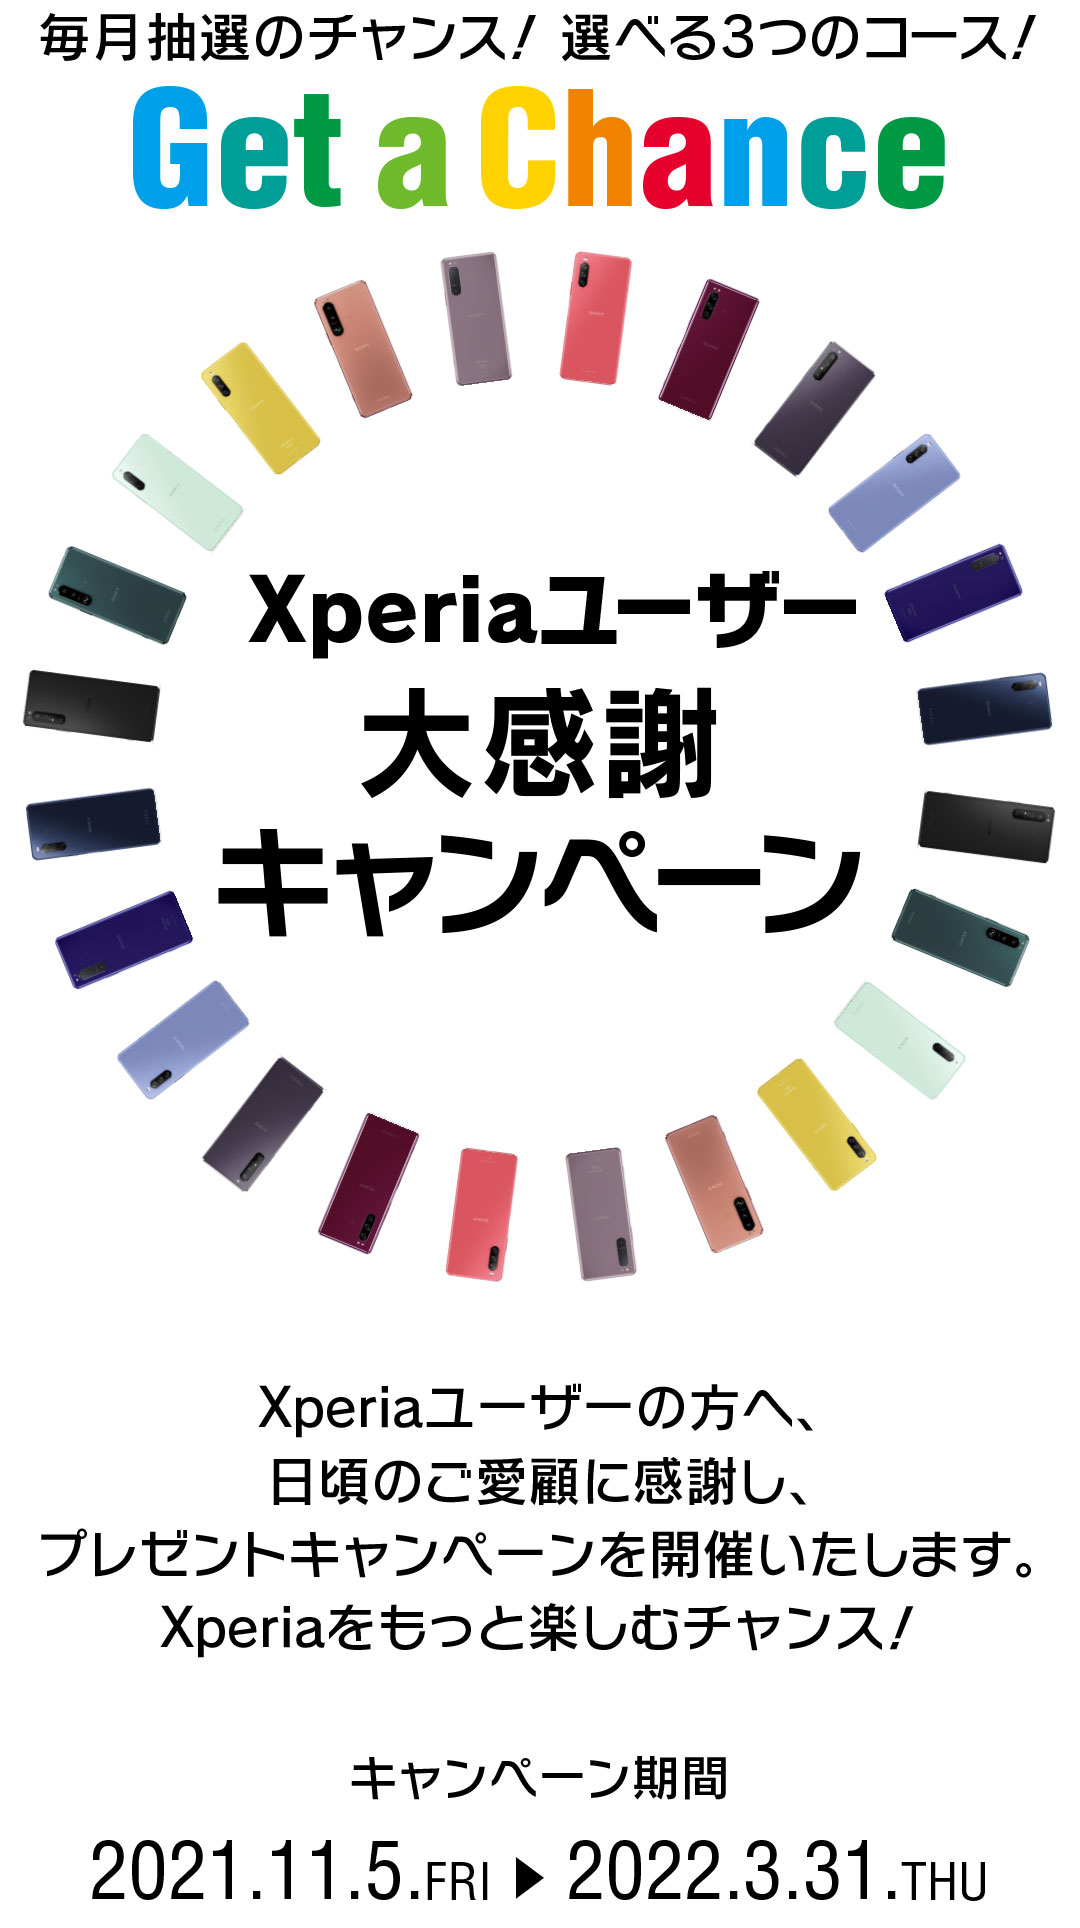 Xperiaユーザー大感謝キャンペーン Get a Chance 毎月抽選のチャンス！ 選べる3つのコース！ Xperiaユーザーの皆様へ、日頃のご愛顧に感謝し、 さらにXperiaを楽しんでいただくためのプレゼントキャンペーンを実施いたします。 応募期間第１弾 2021.11.5.FRI → 2021.11.30.TUE 23:59 キャンペーン期間 2021.11.5.FRI → 2022.3.31.THU 2013年以降に発売されたXperia(TM)スマートフォン、Xperia(TM)タブレットが対象になります。